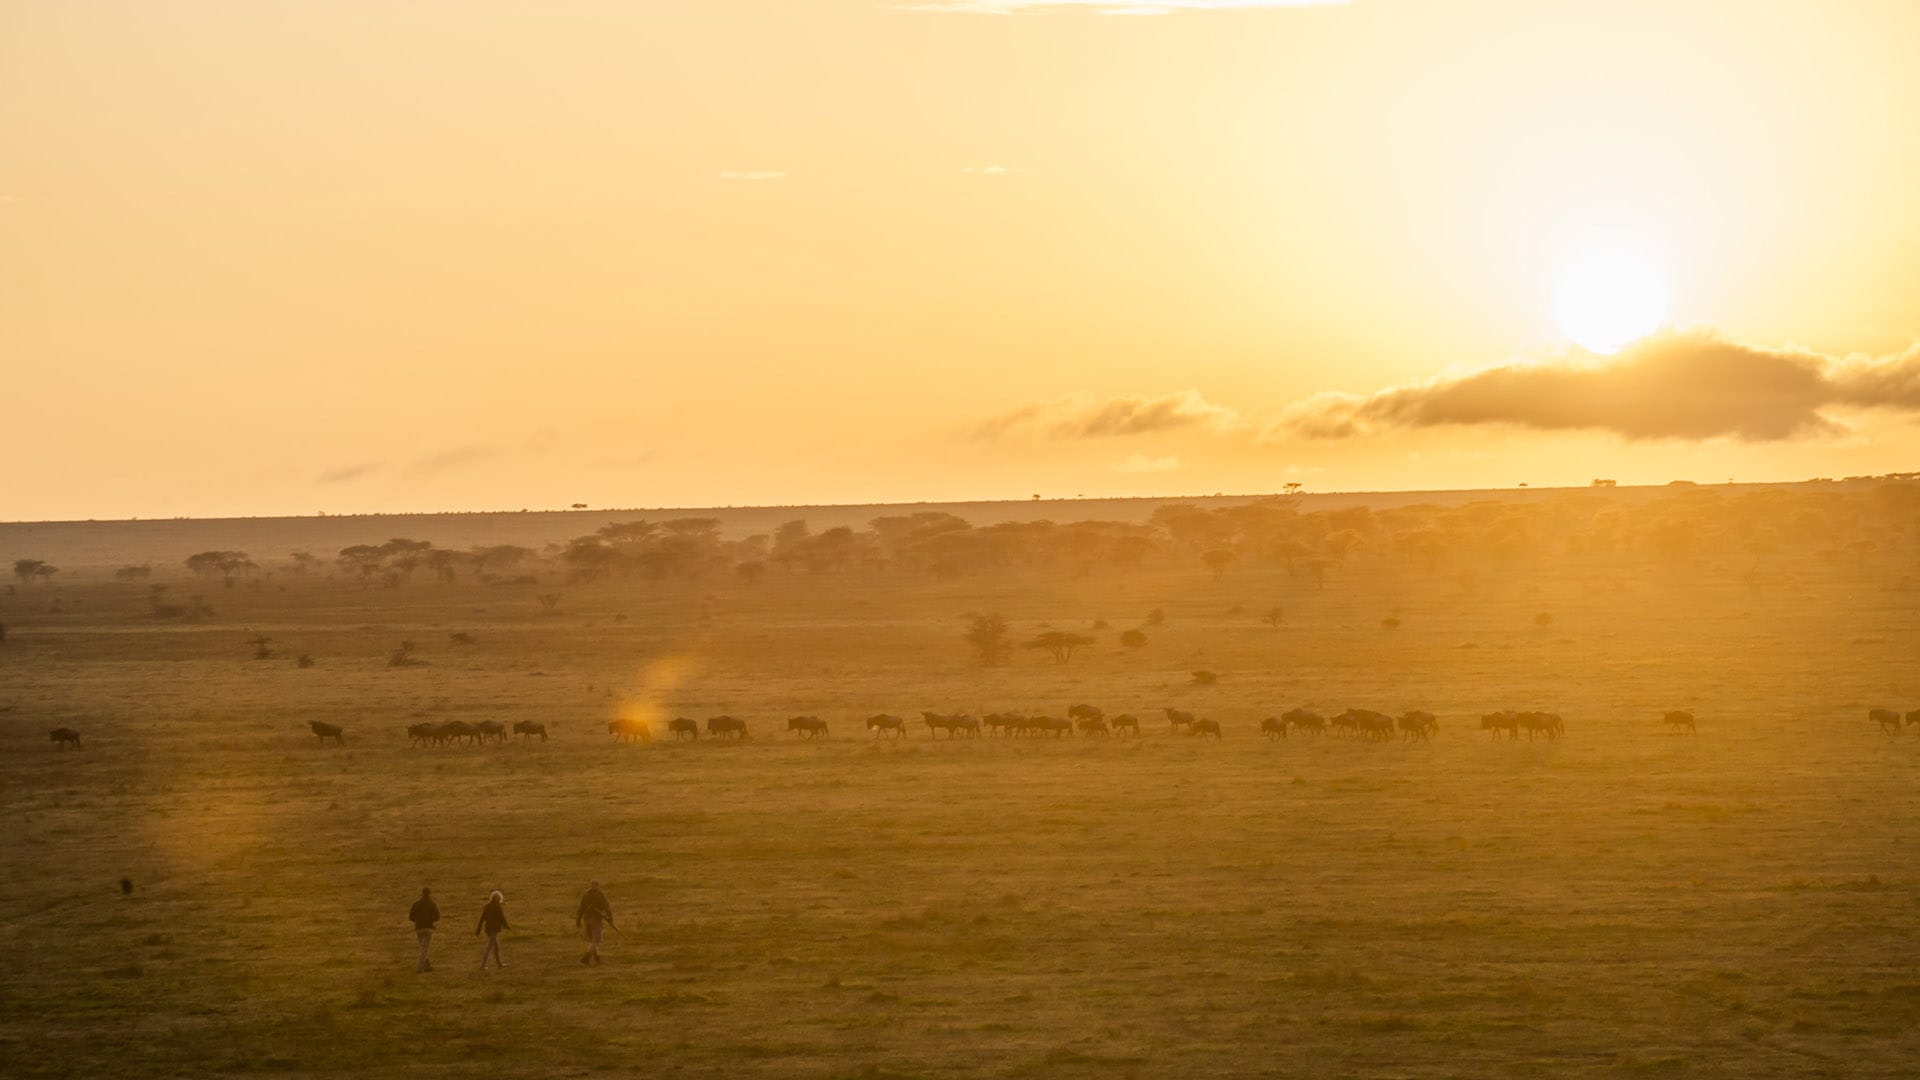 Serengeti at sunset